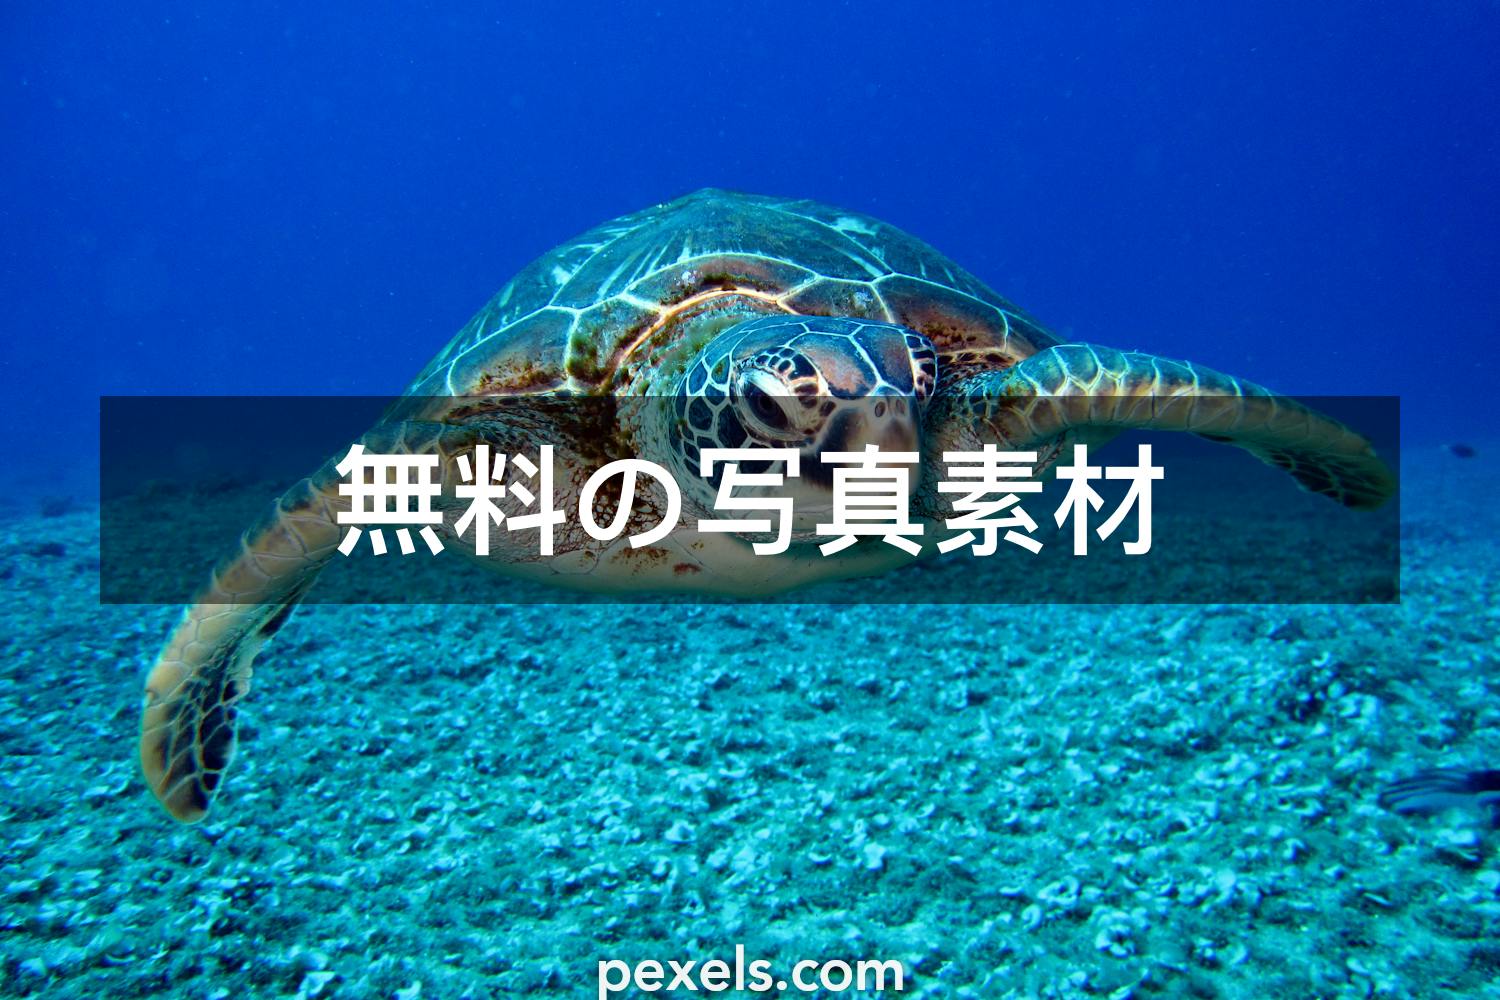 50 ウミガメと一致する写真 Pexels 無料の写真素材